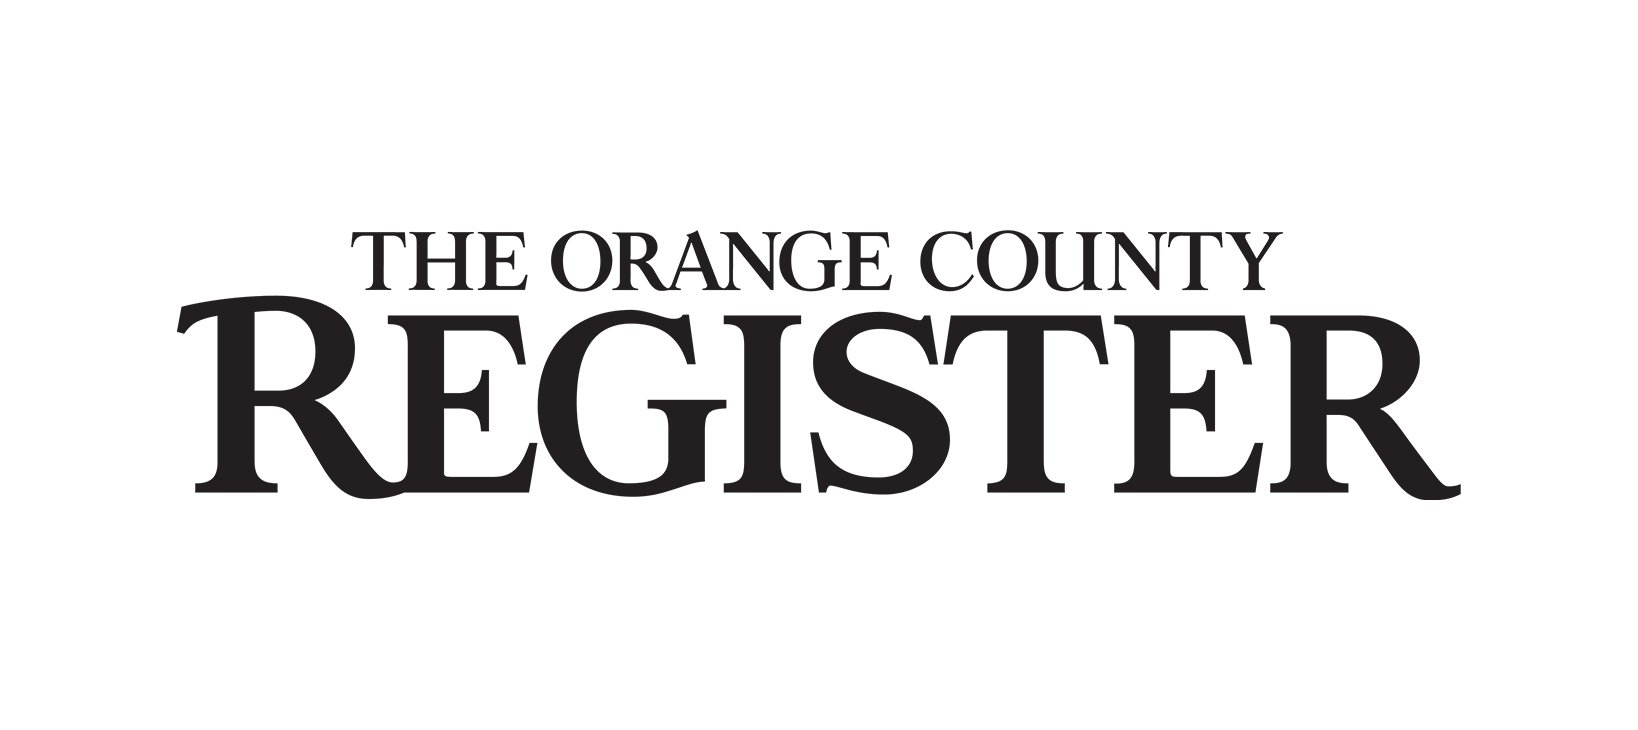 The OC Register